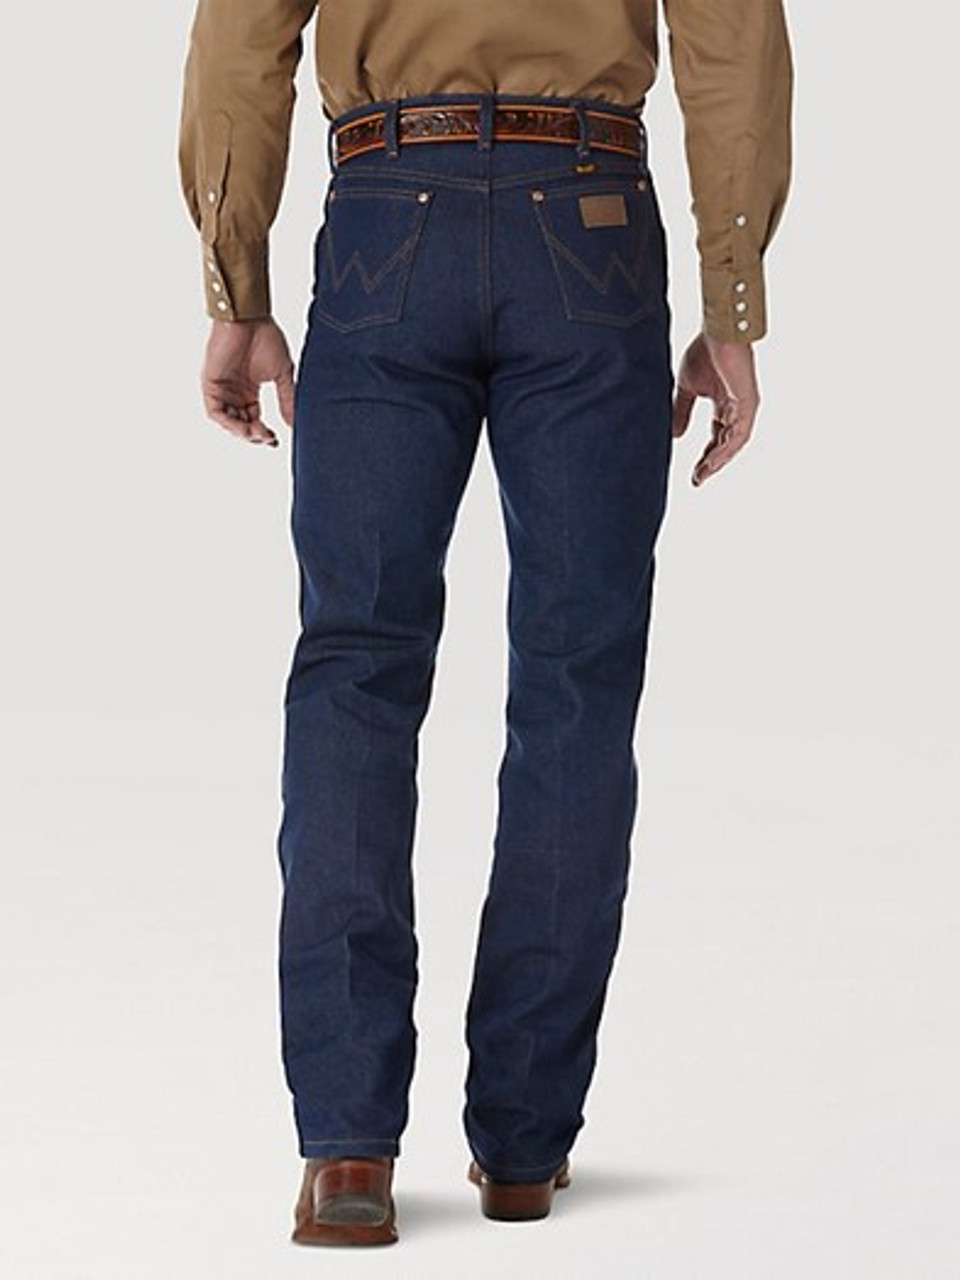 Women's Wrangler Cowboy Cut Slim Fit Jean #112315294